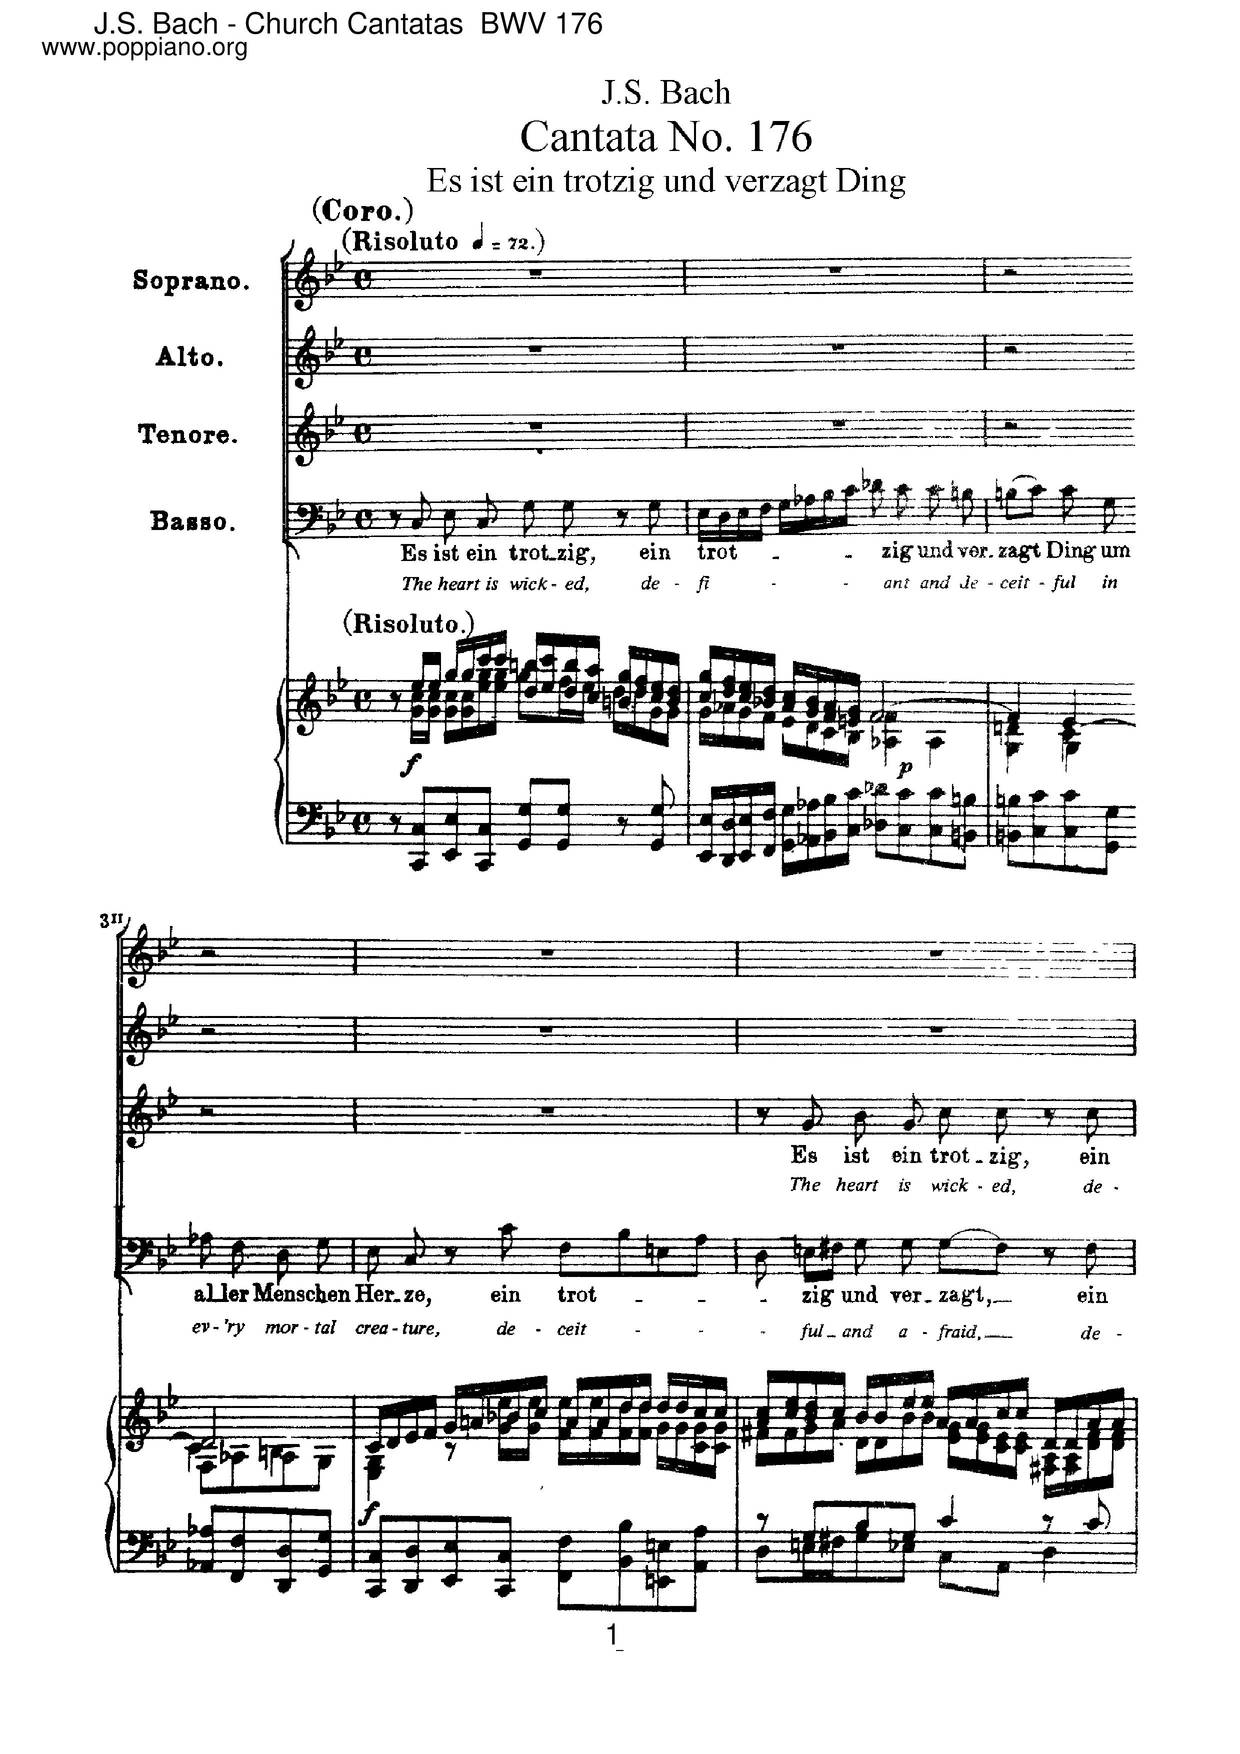 Es Ist Ein Trotzig Und Verzagt Ding, BWV 176 Score